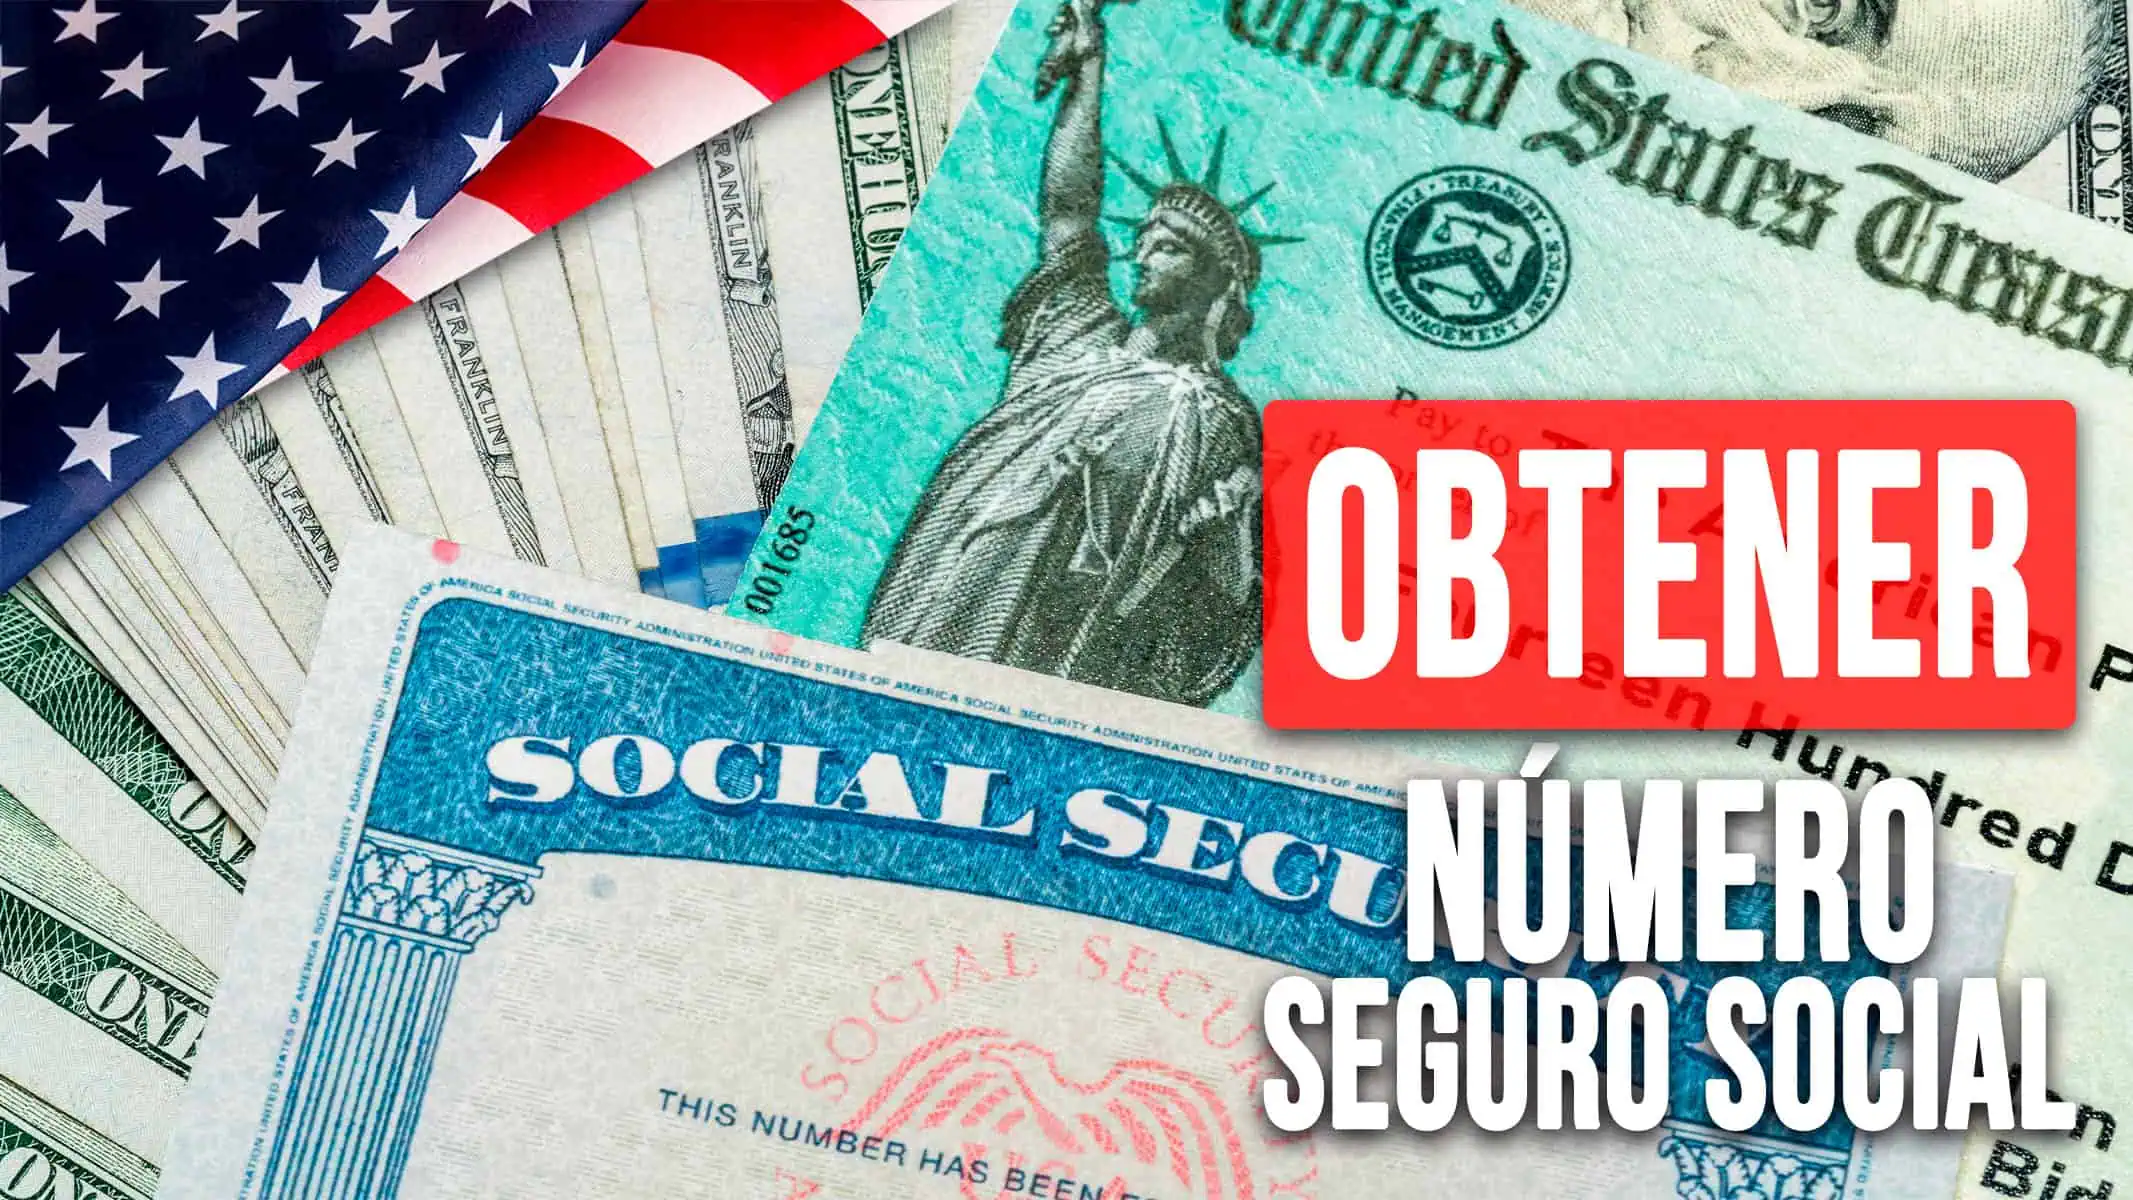 Cómo Obtener tu Número de Seguro Social en EE.UU. Siendo Inmigrante: Guía Completa